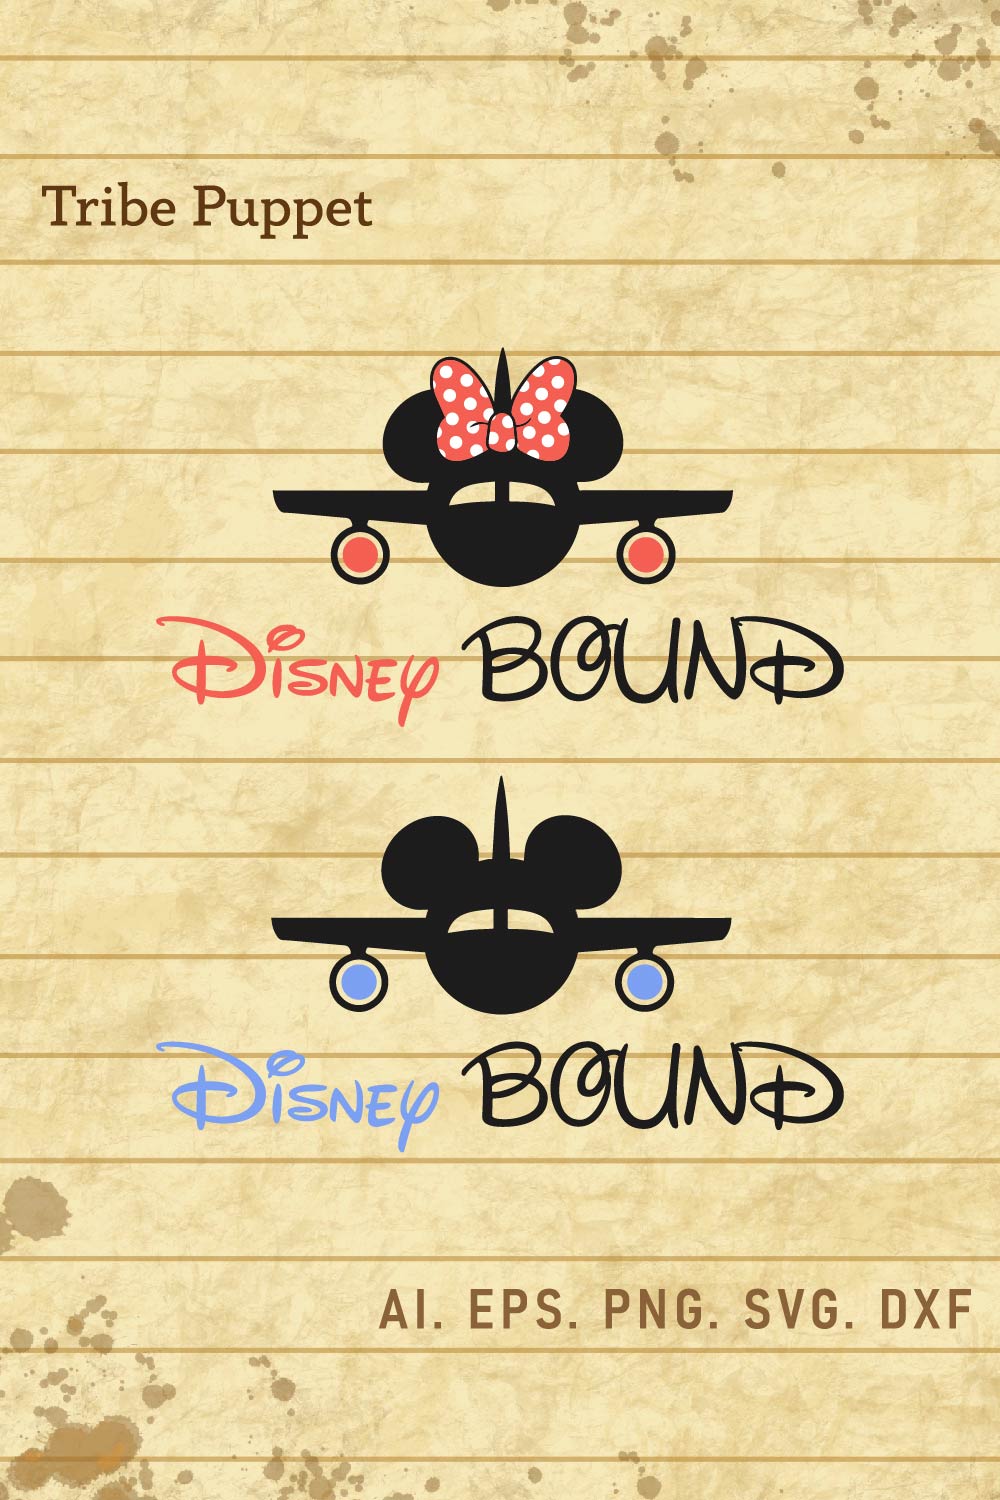 Disney Bound Minnie pinterest preview image.